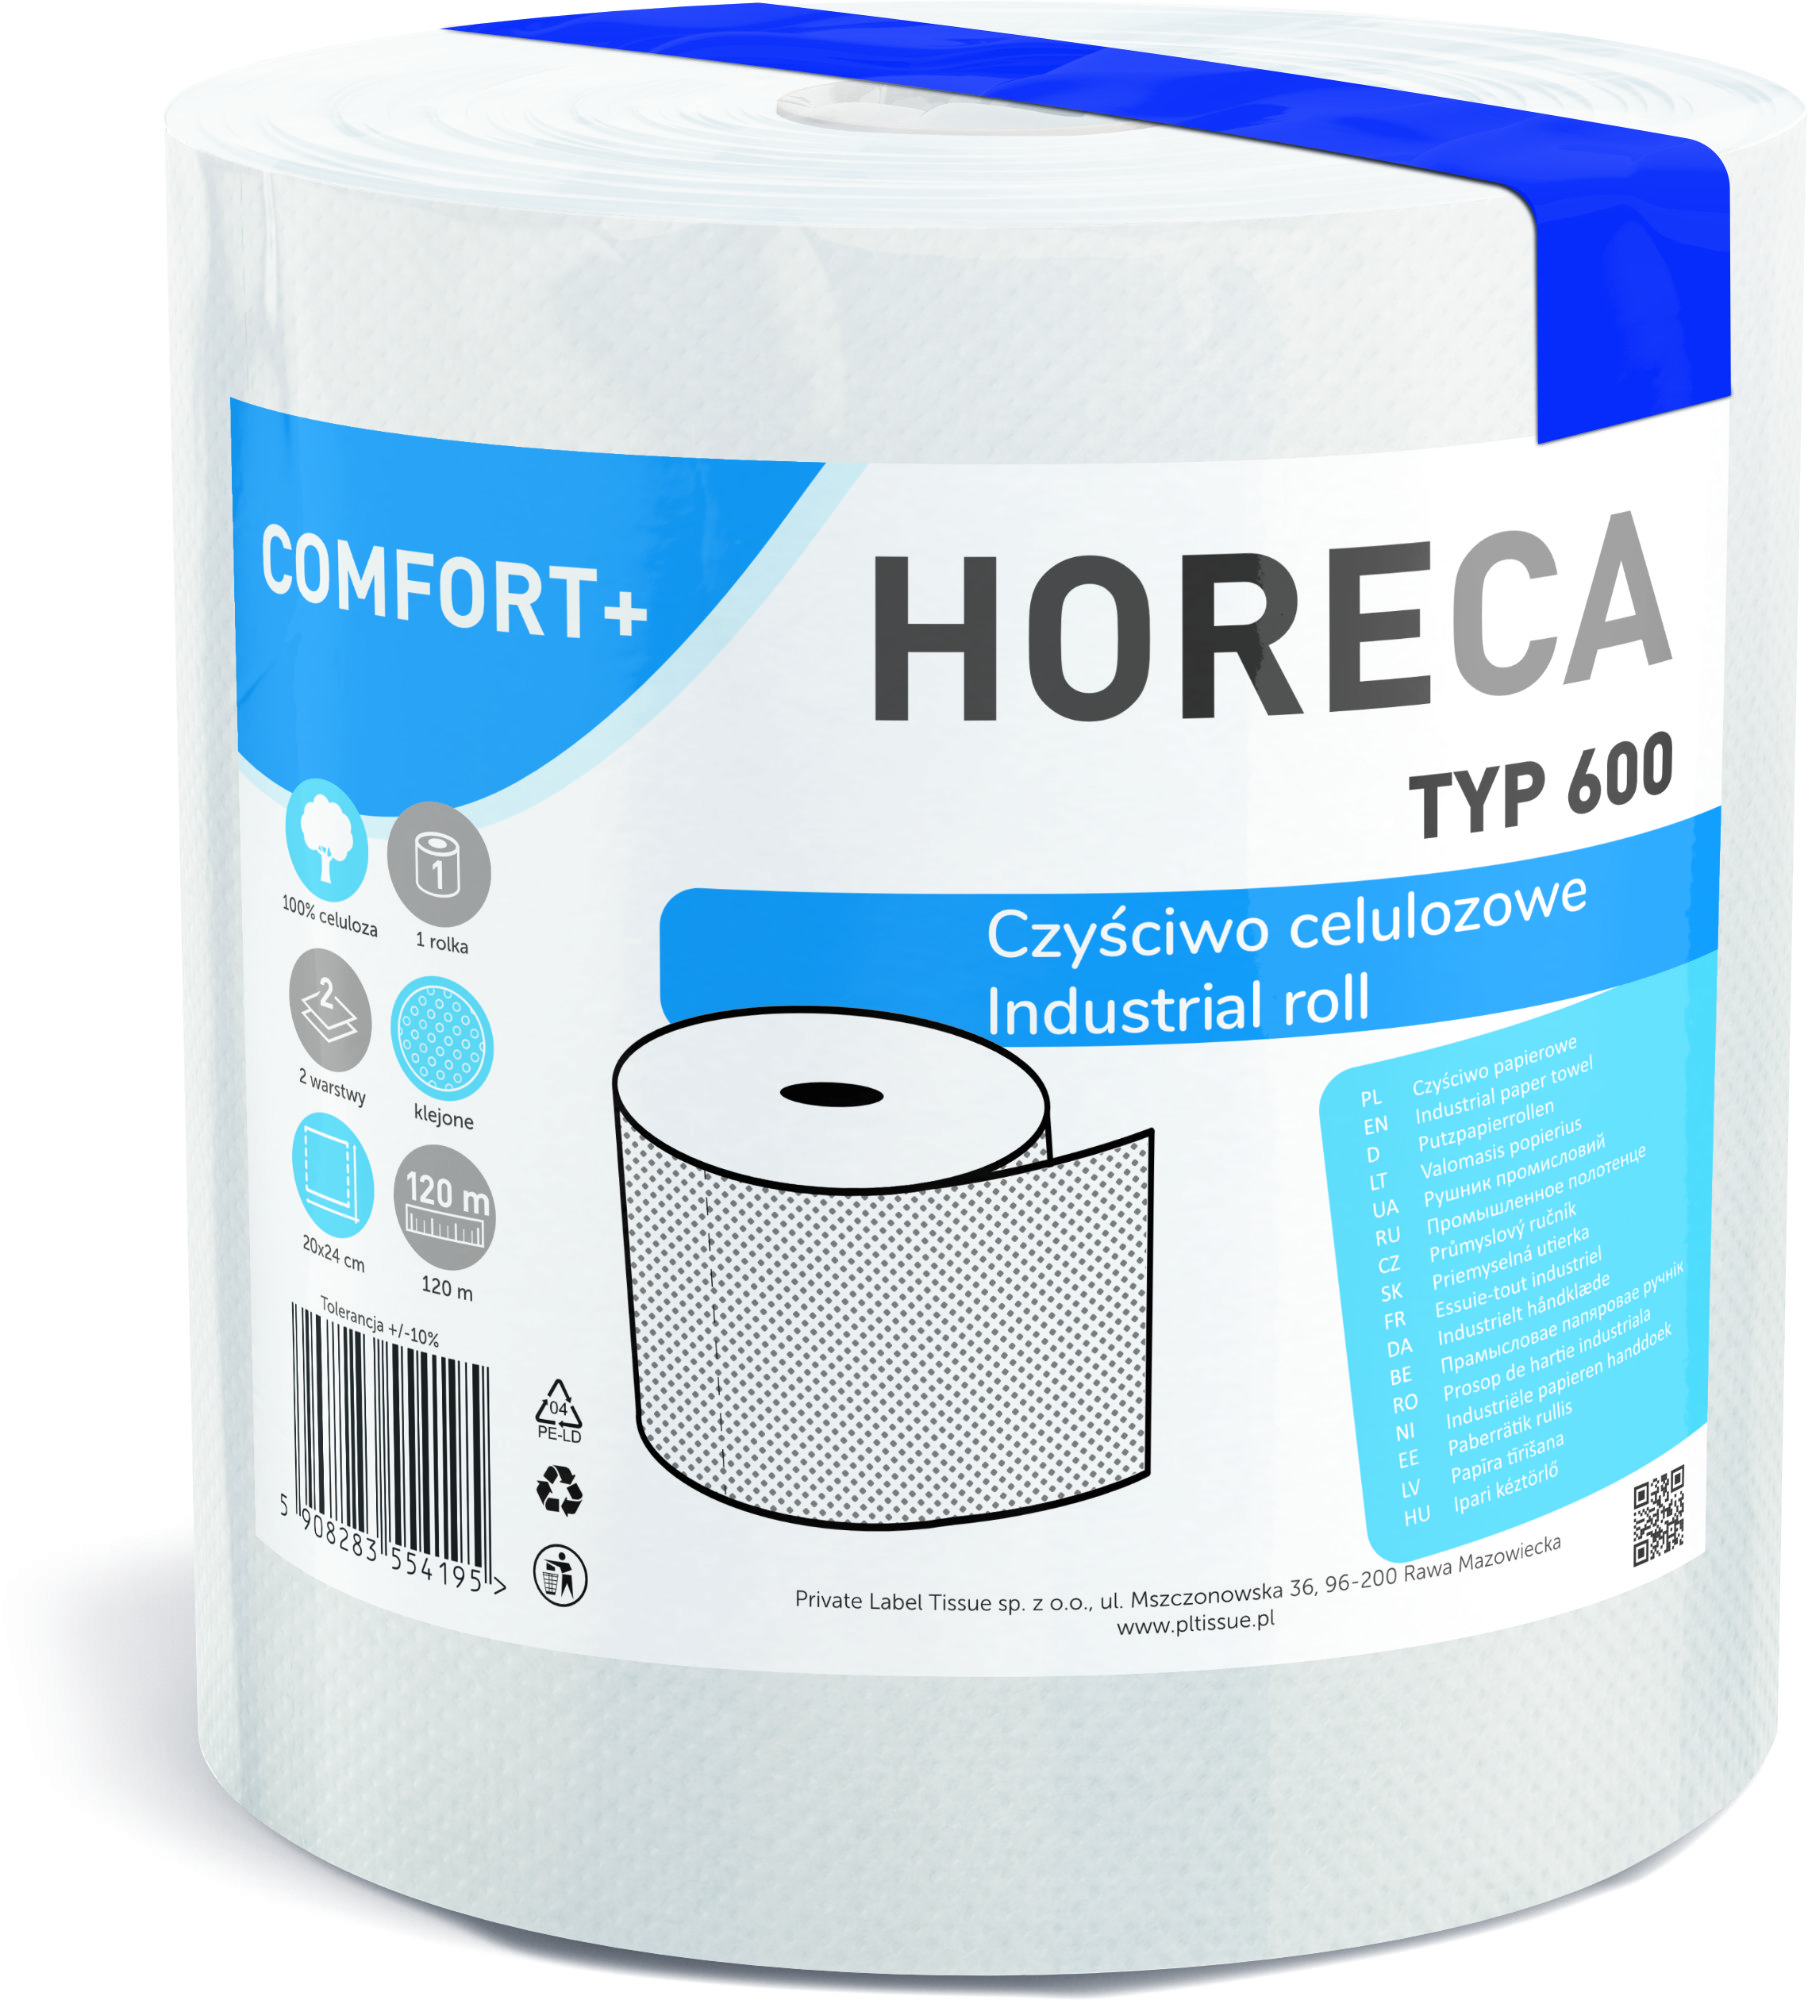 Industrial paper roll 1R HORECA COMFORT+ TYPE 600 2 plies